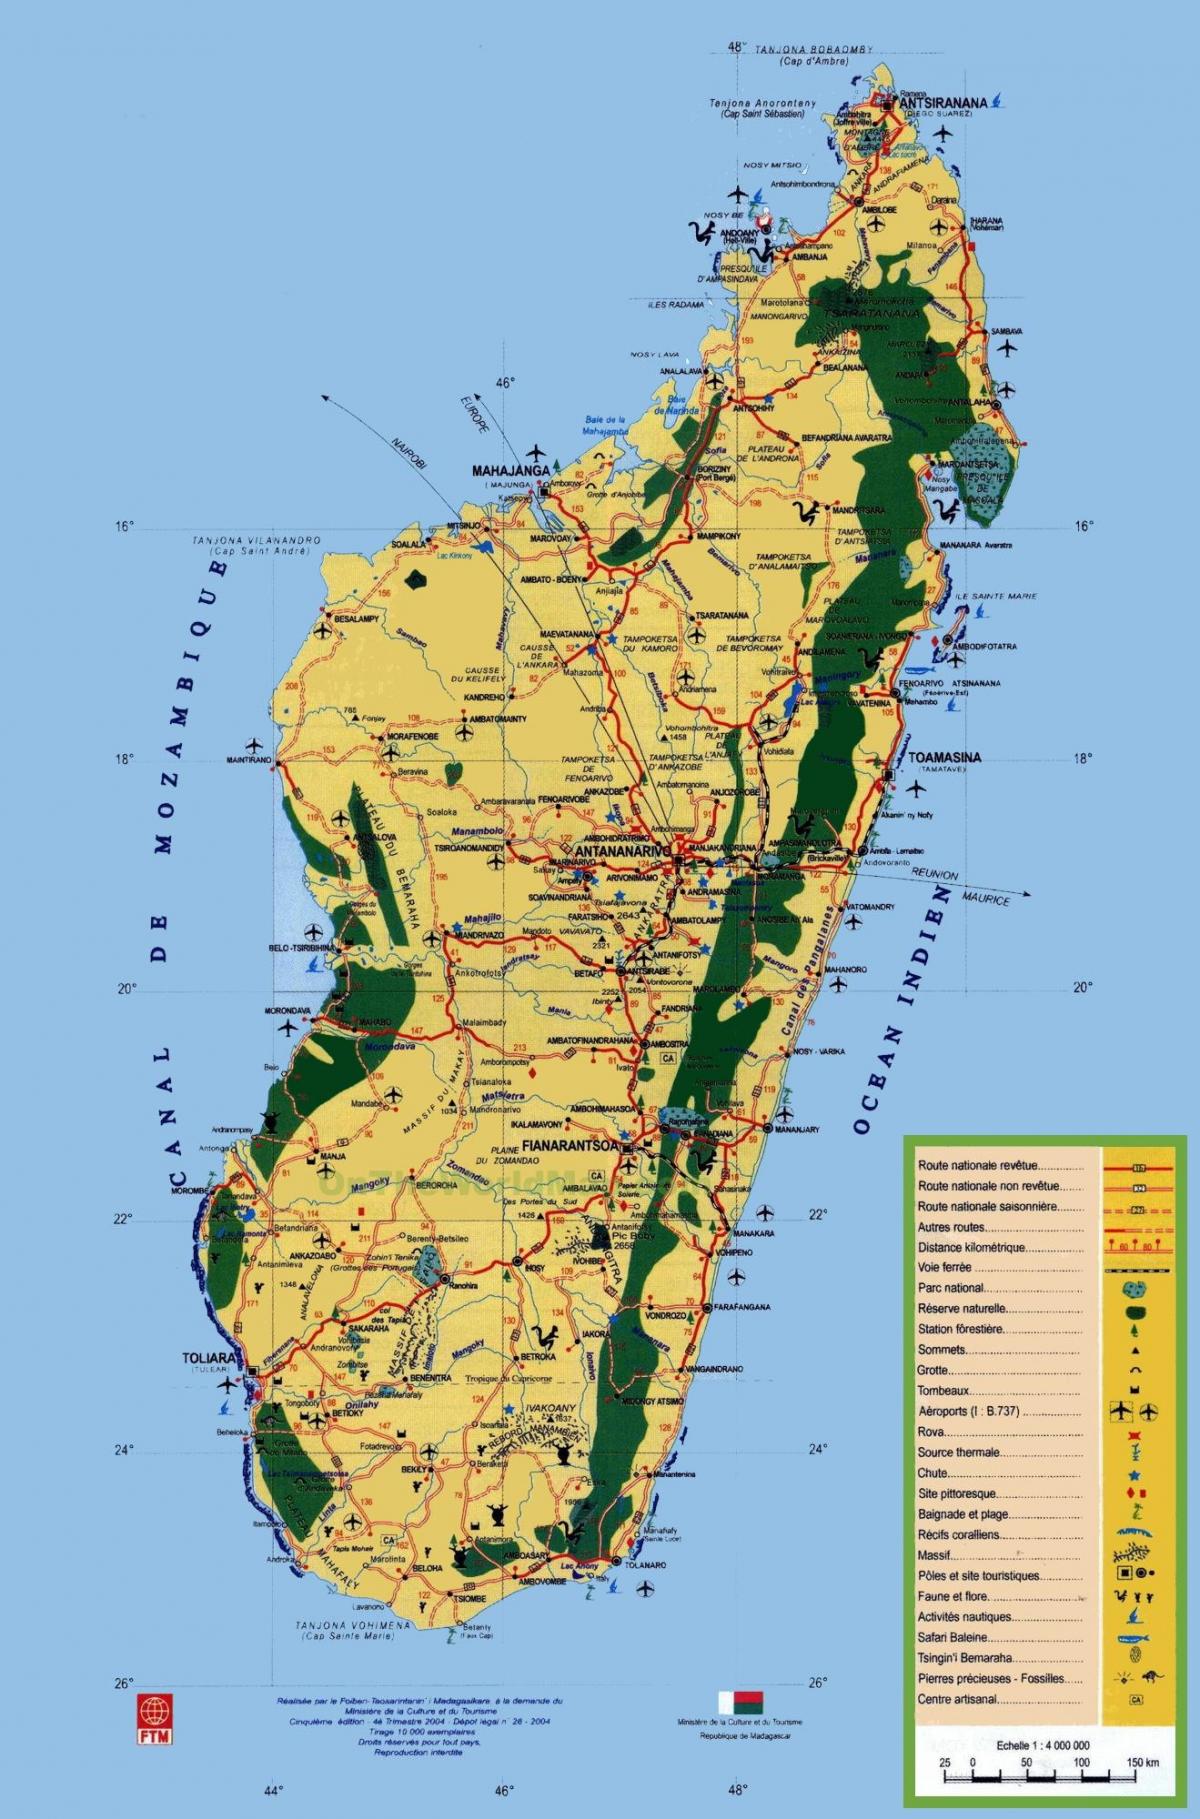 Madagascar atracções turísticas mapa